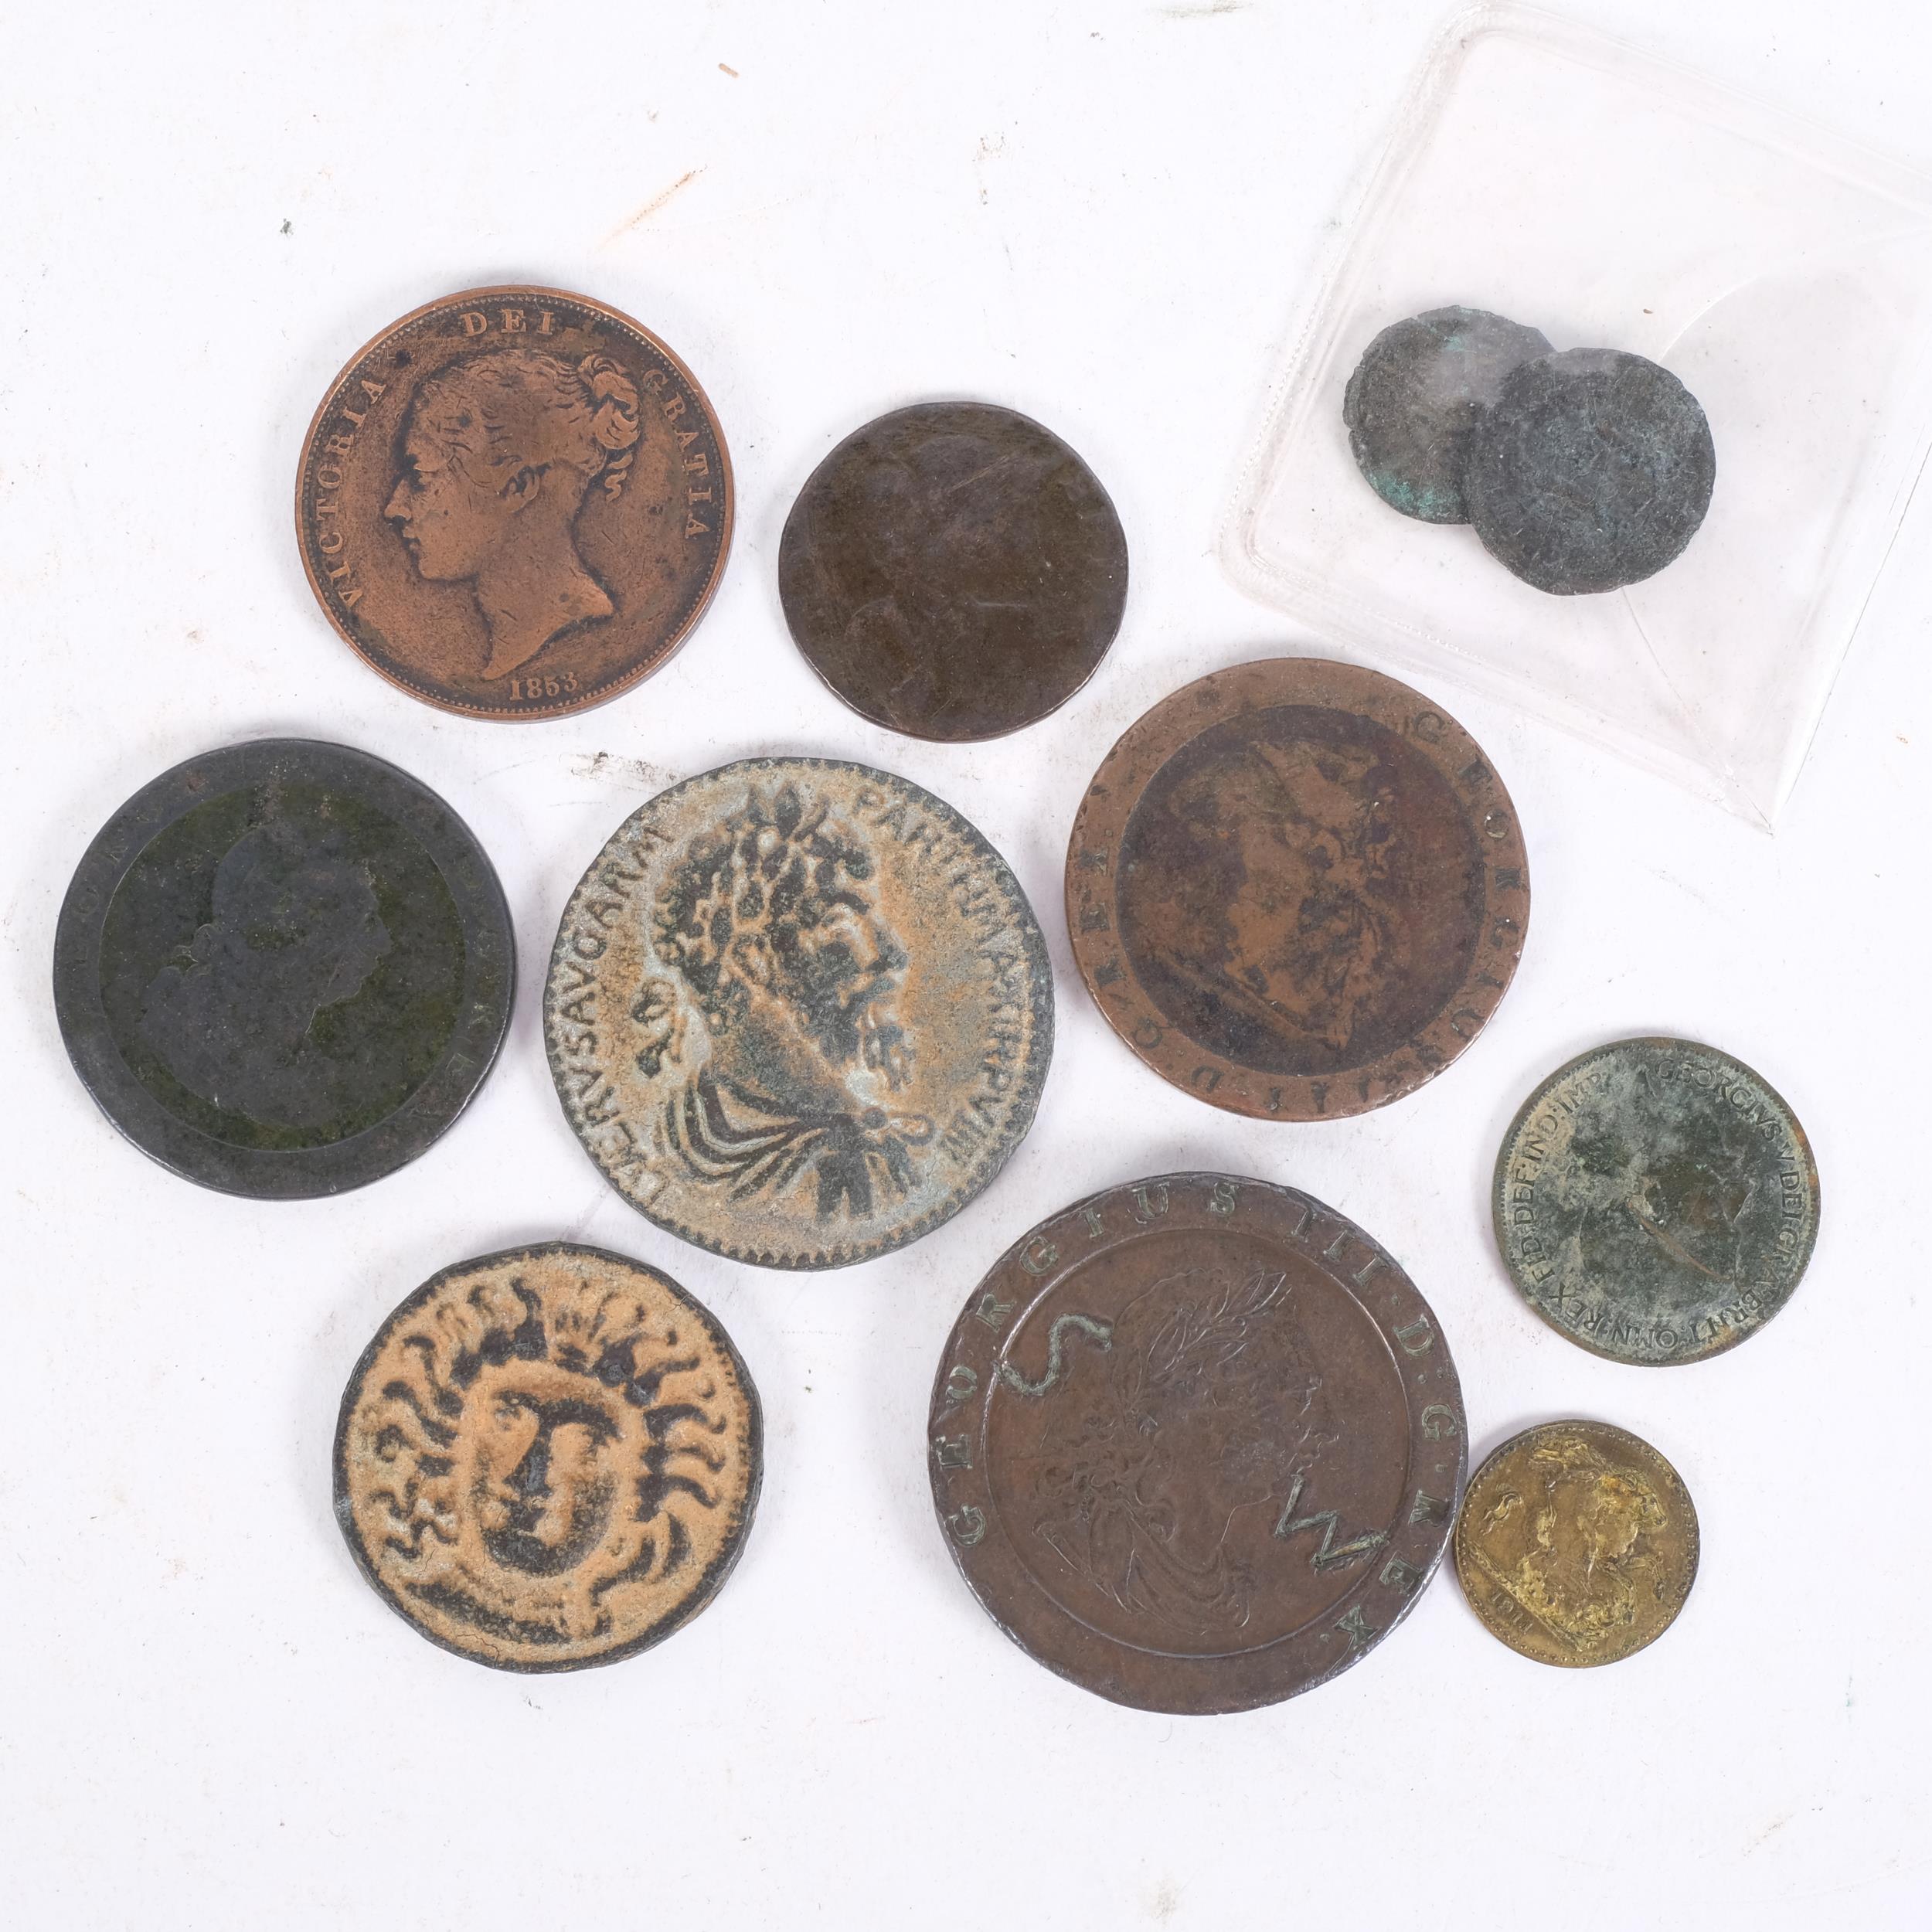 A tin of various British coins, cartwheel pennies, etc - Image 2 of 2